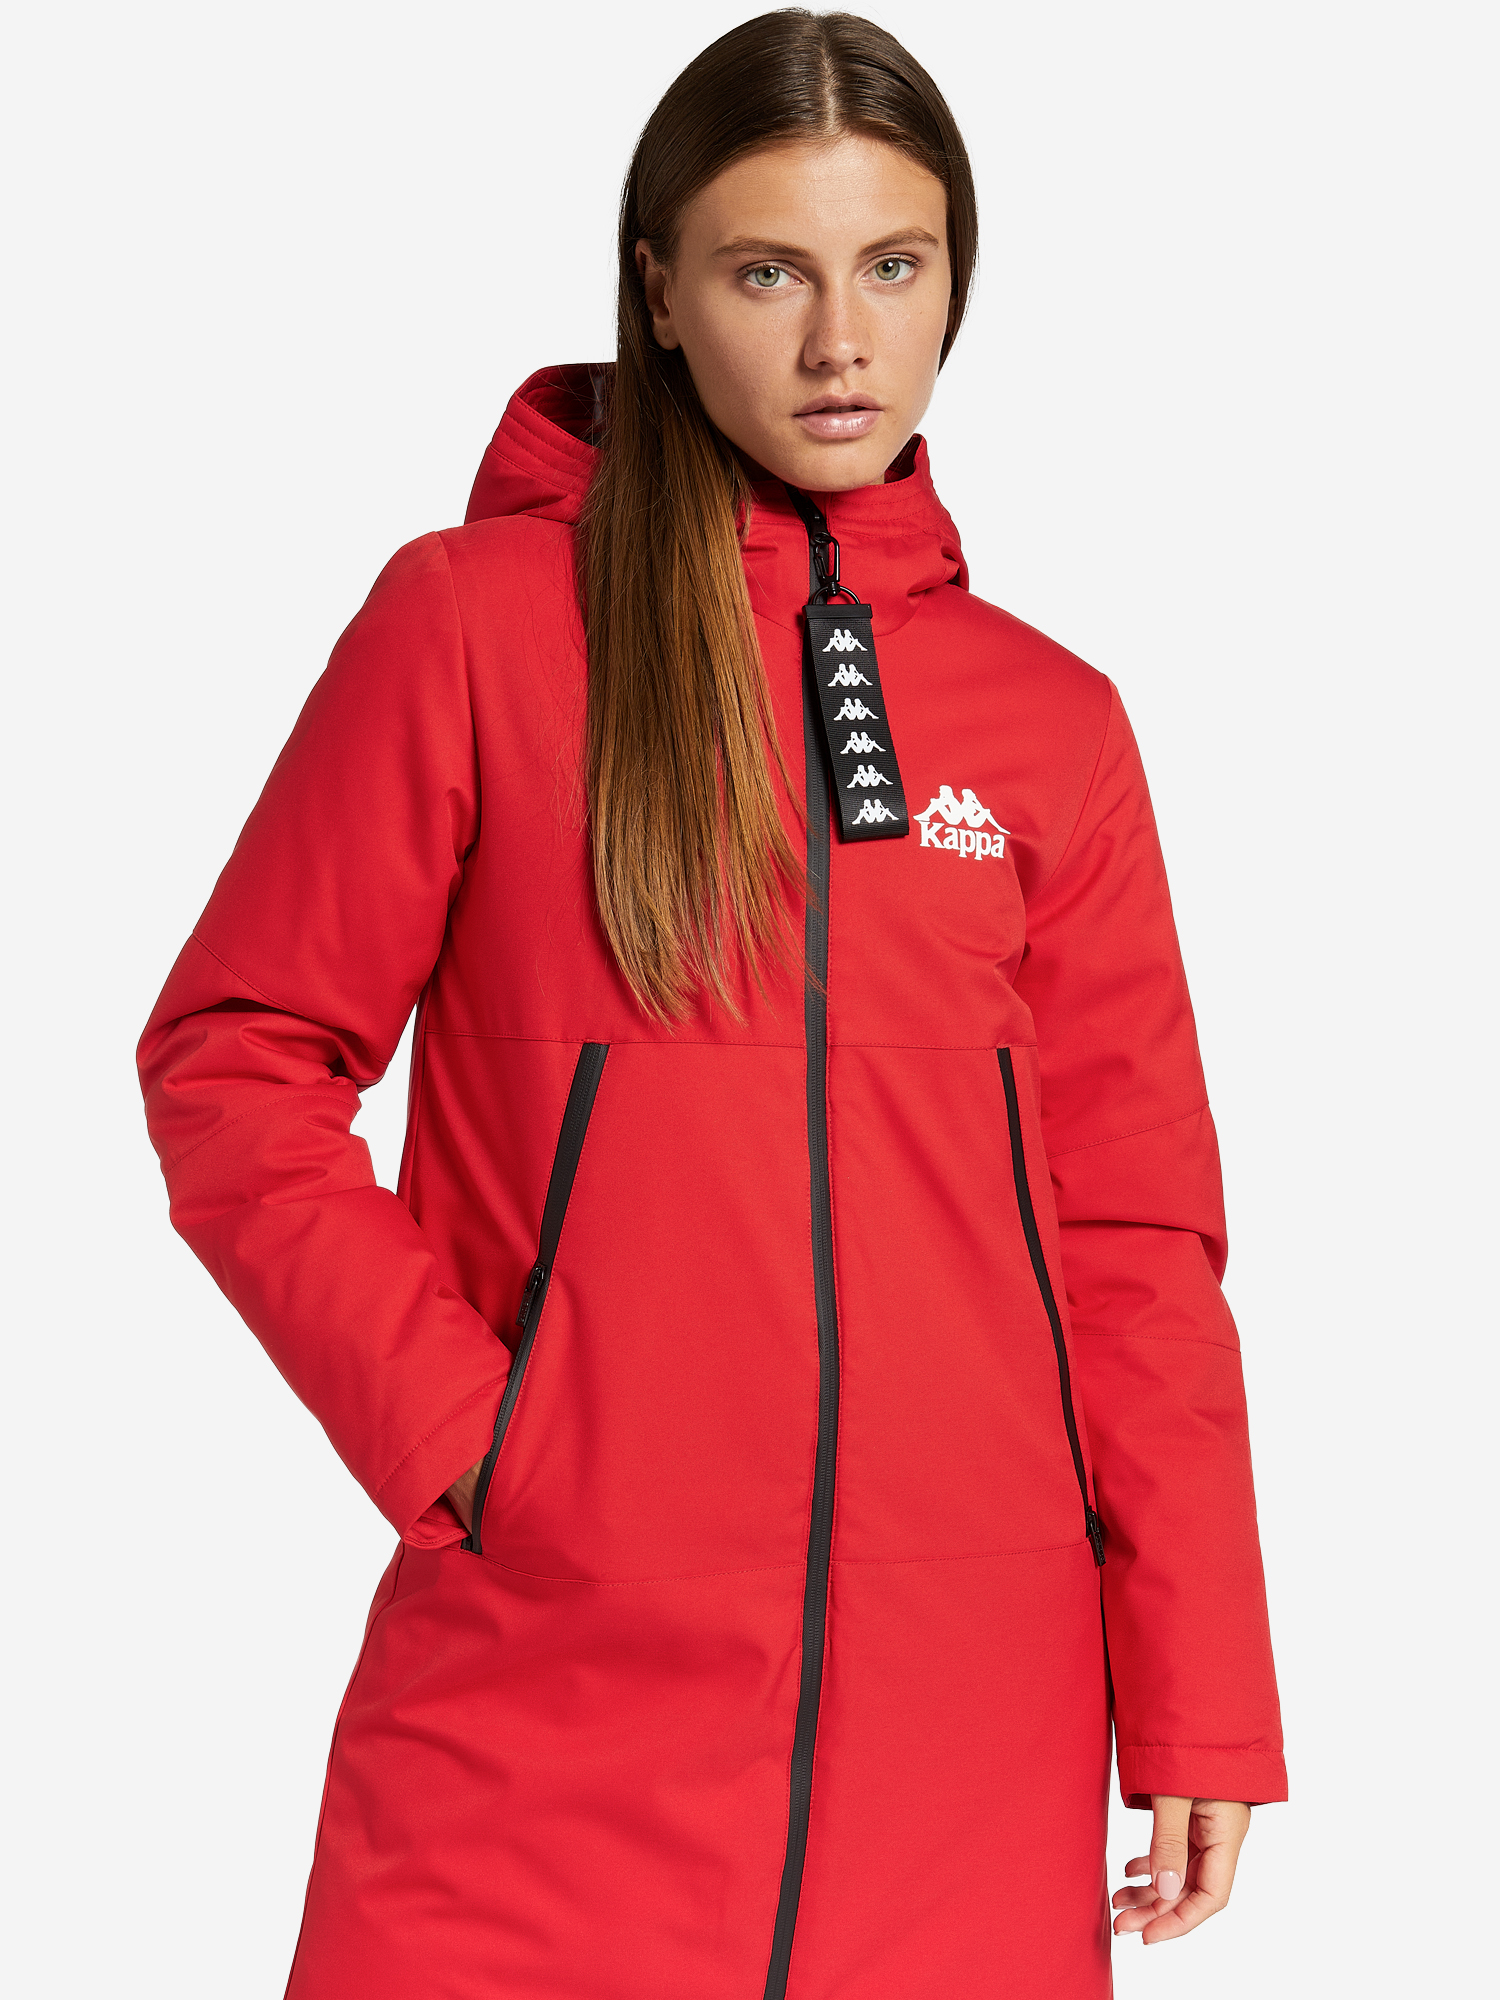 фото Куртка утепленная женская kappa, красный, размер 42